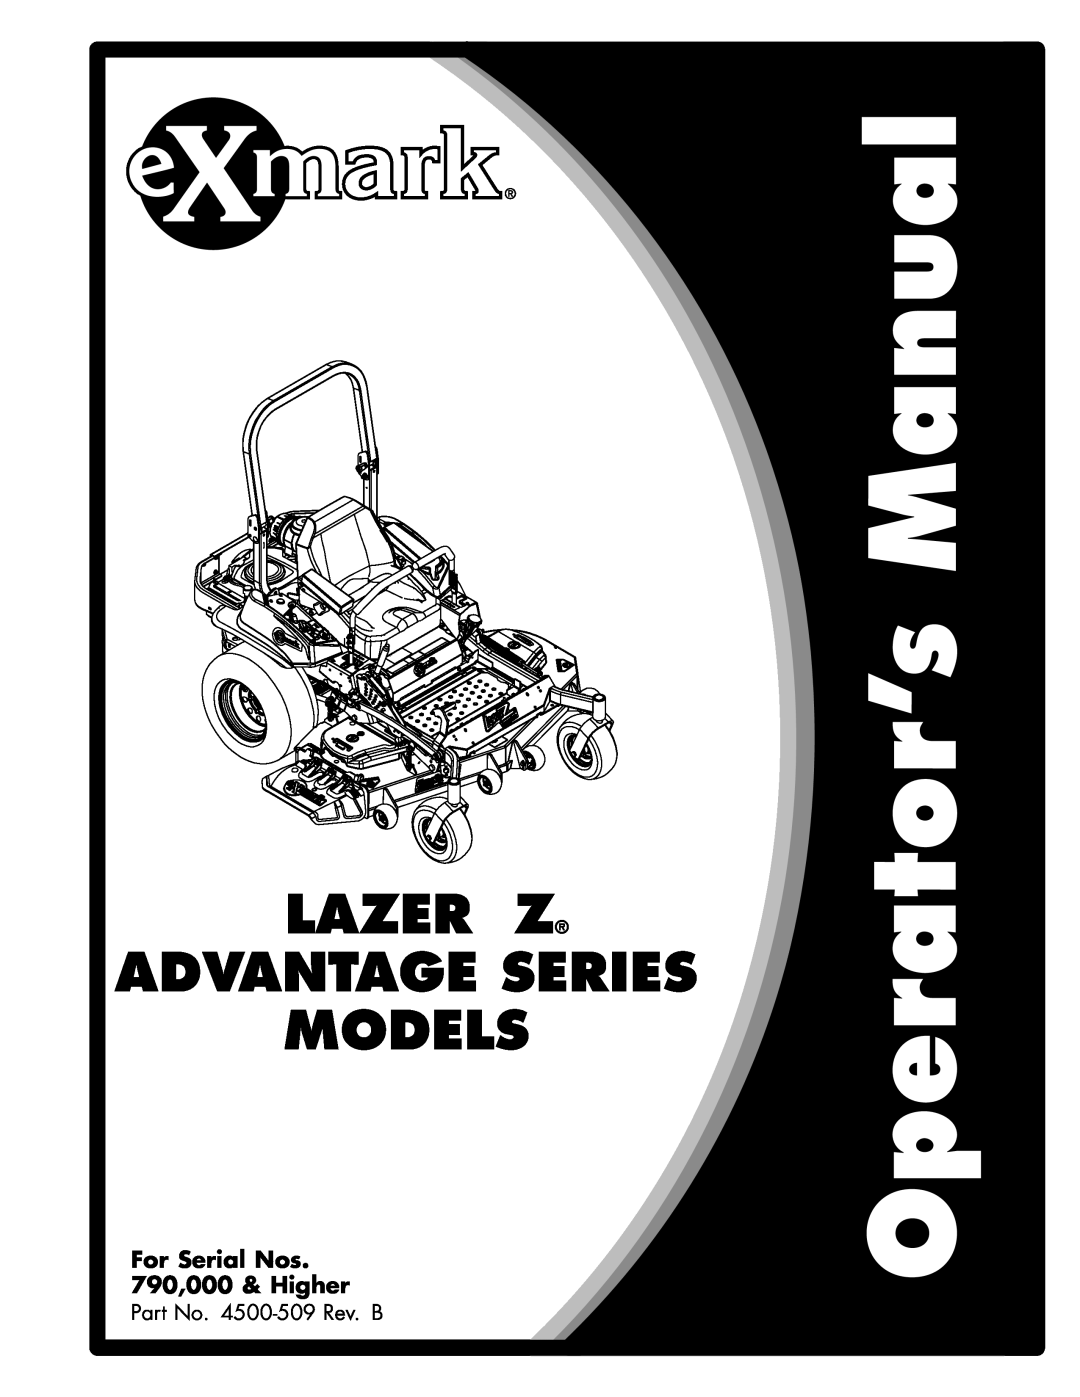 Exmark 850, 000 & higher manual Ultra Vac, Lazer Z, Lazer Z As Series X, And Lazer Z As, Models, To fit Lazer Z LZZ and 